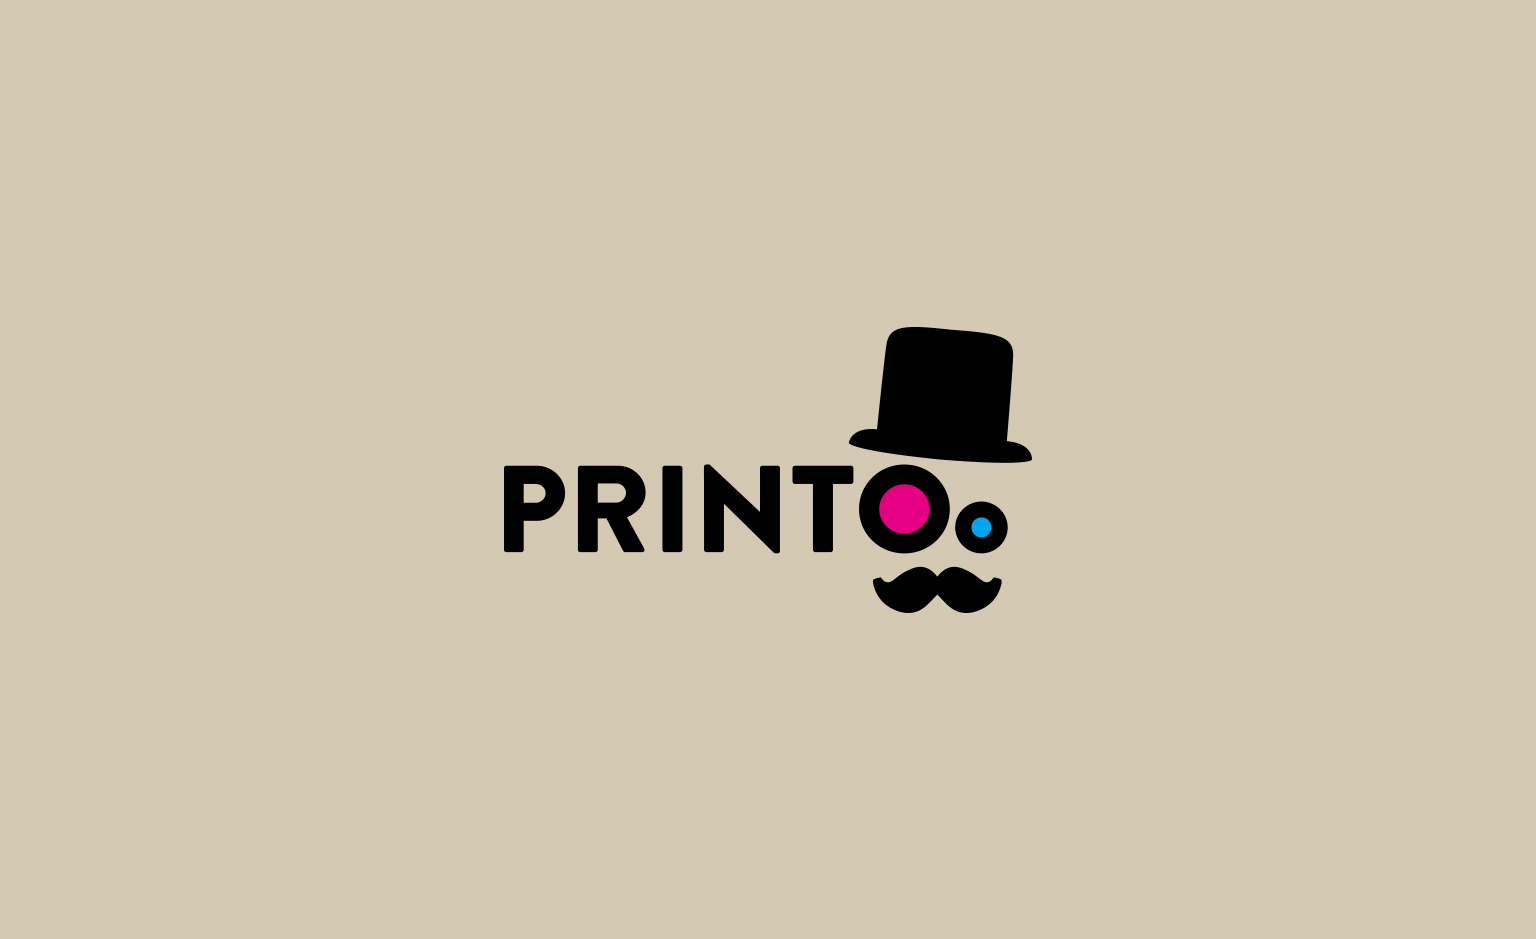 PrinToo Logo Design Awards Projekt Logo